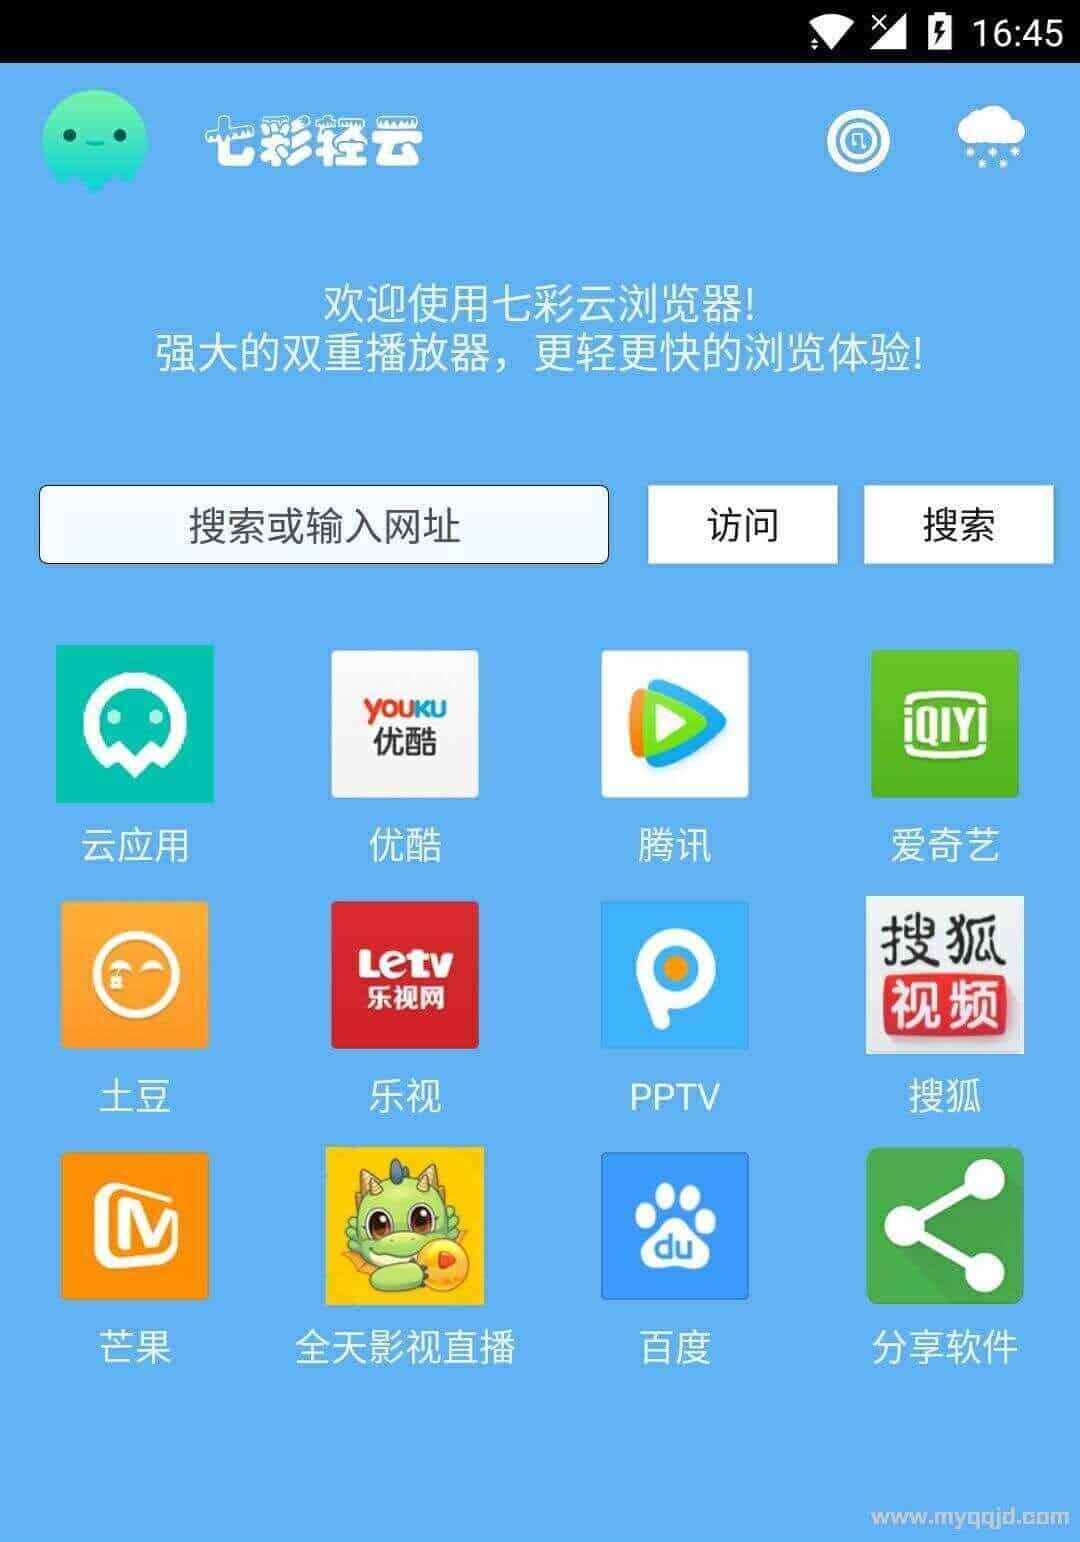 七彩云浏览器 v10.7.6特别版, 爱奇艺 腾讯 优酷等VIP会员免费看